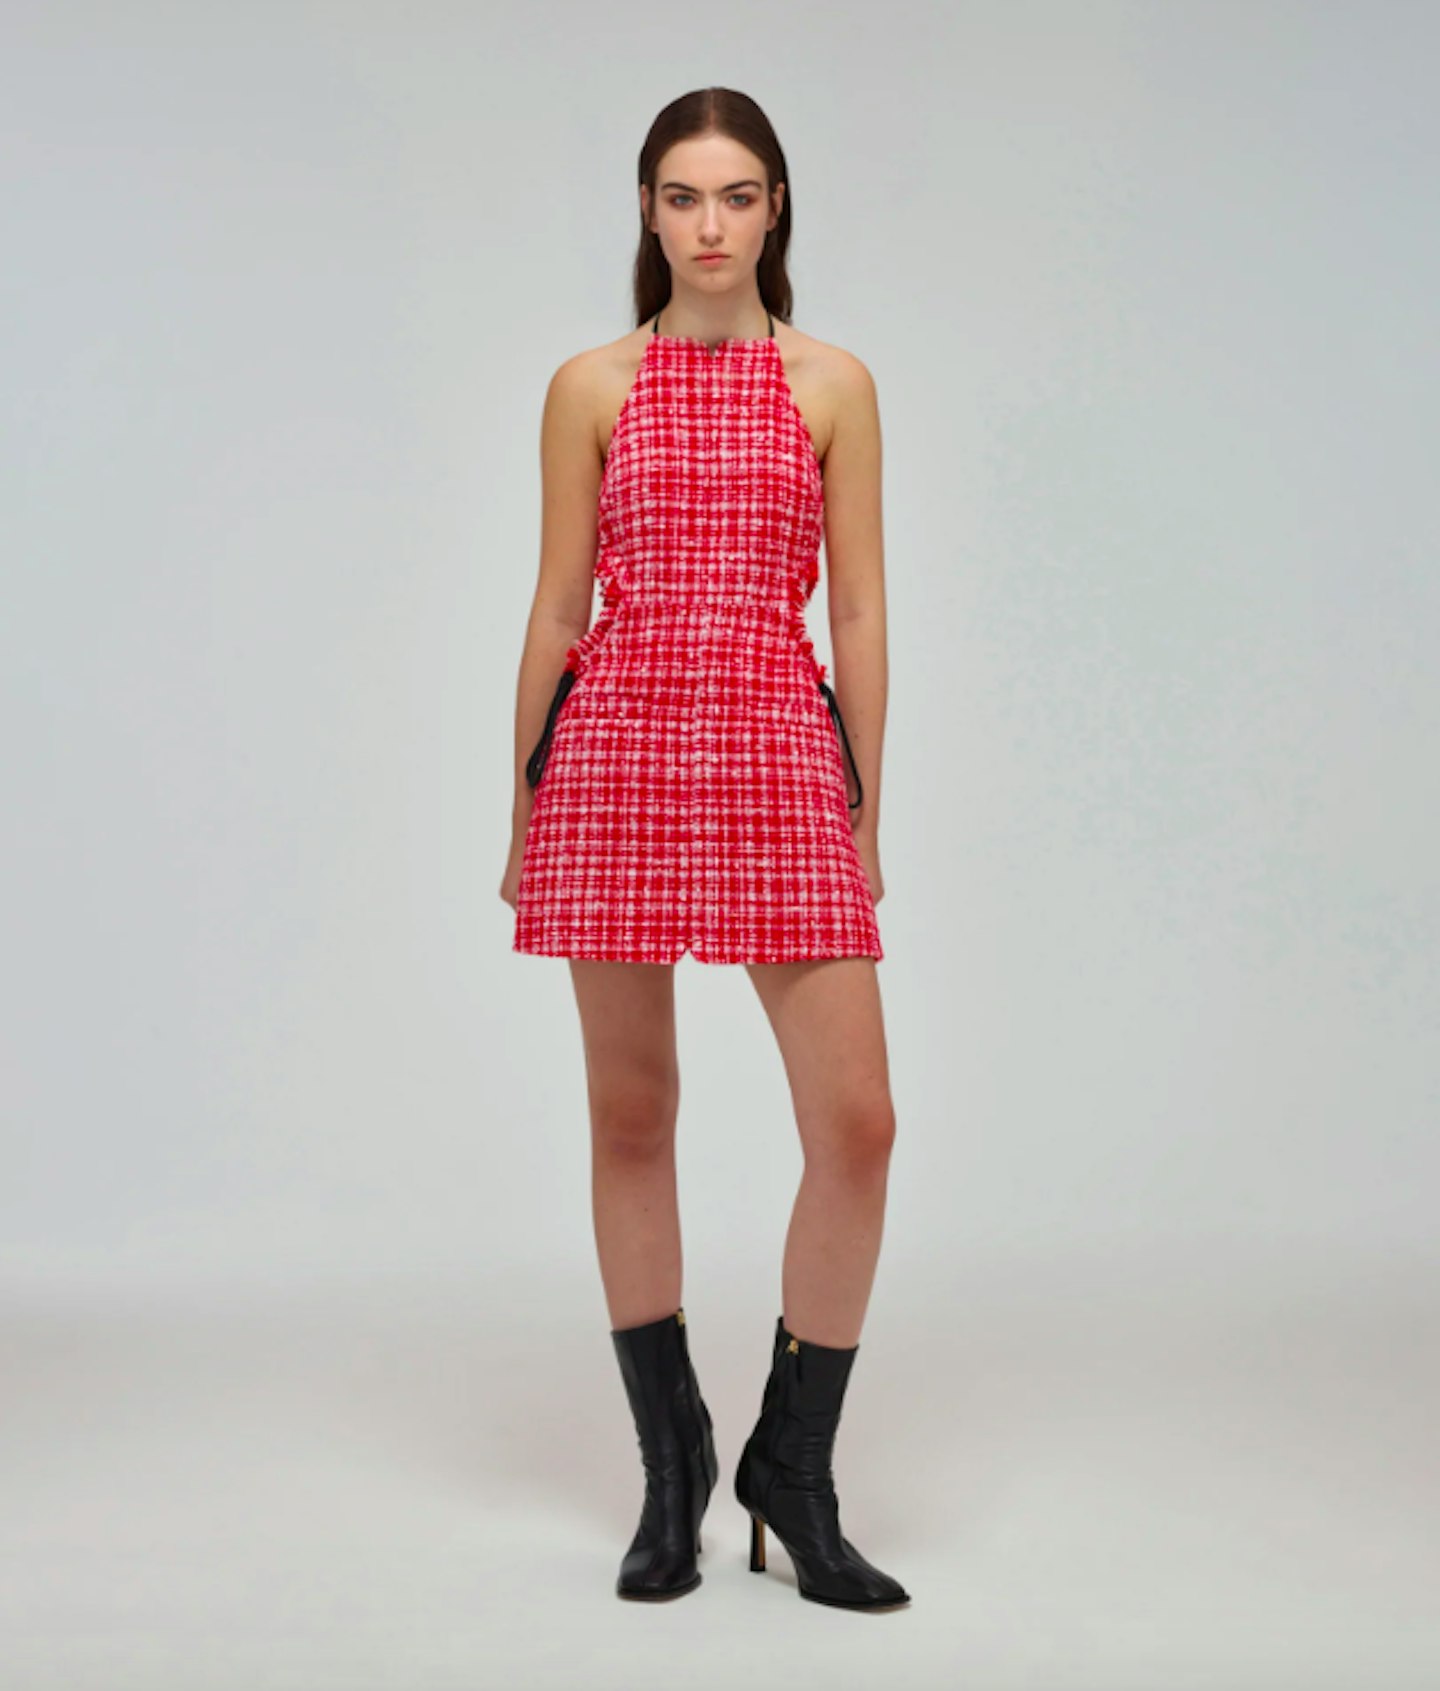 Red Bouclé Cut-Out Mini Dress, £280